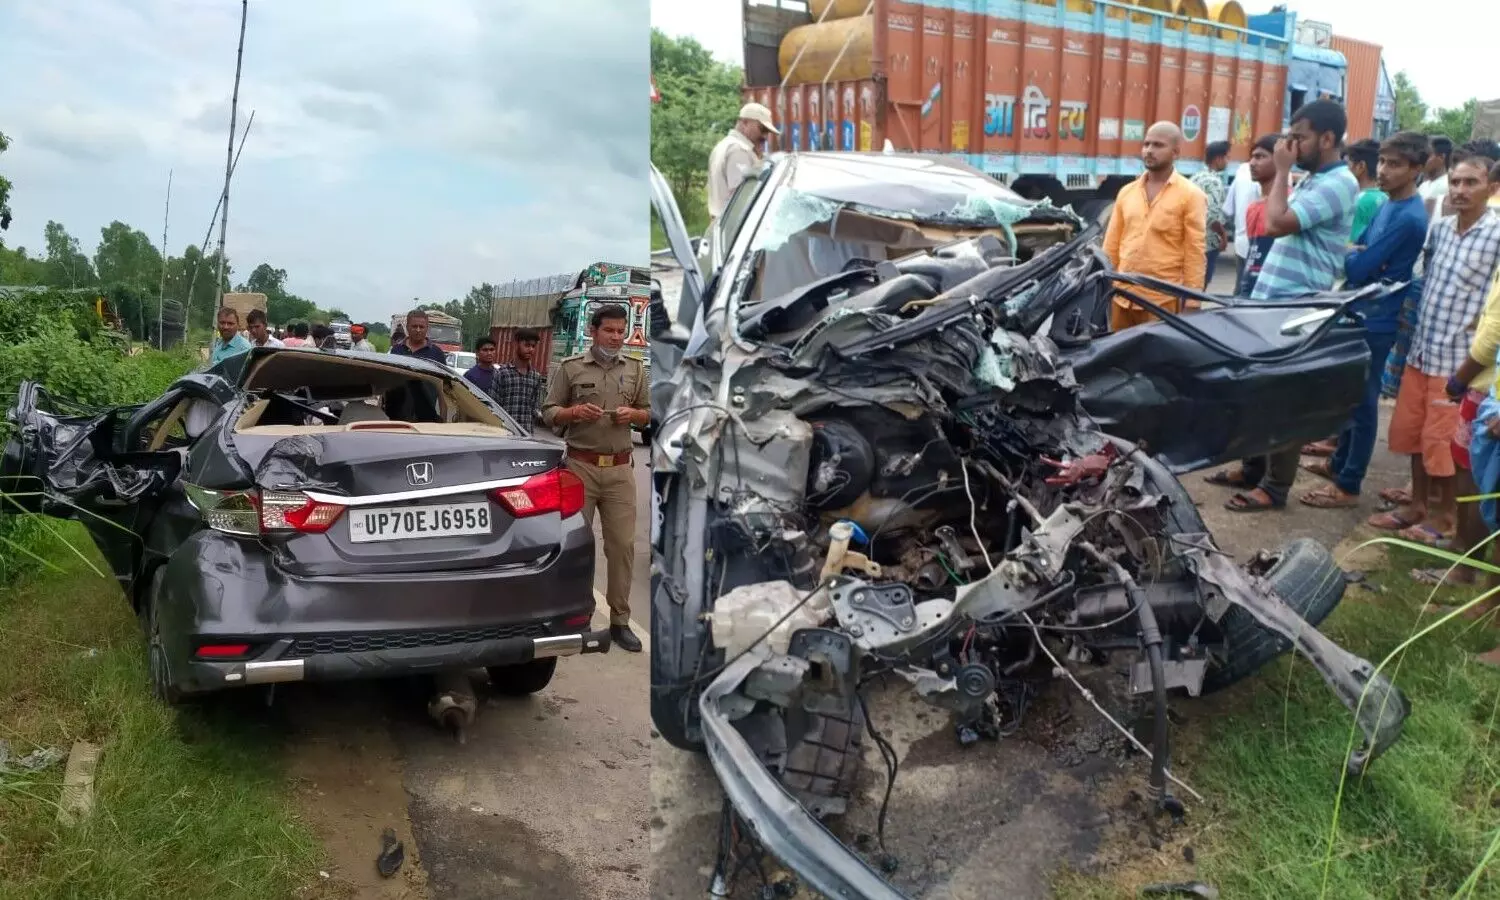 Pratapgarh Accident News: जोरदार टक्कर में तेज रफ्तार कार के उड़े परखच्चे, कई मौतों से मचा कोहराम